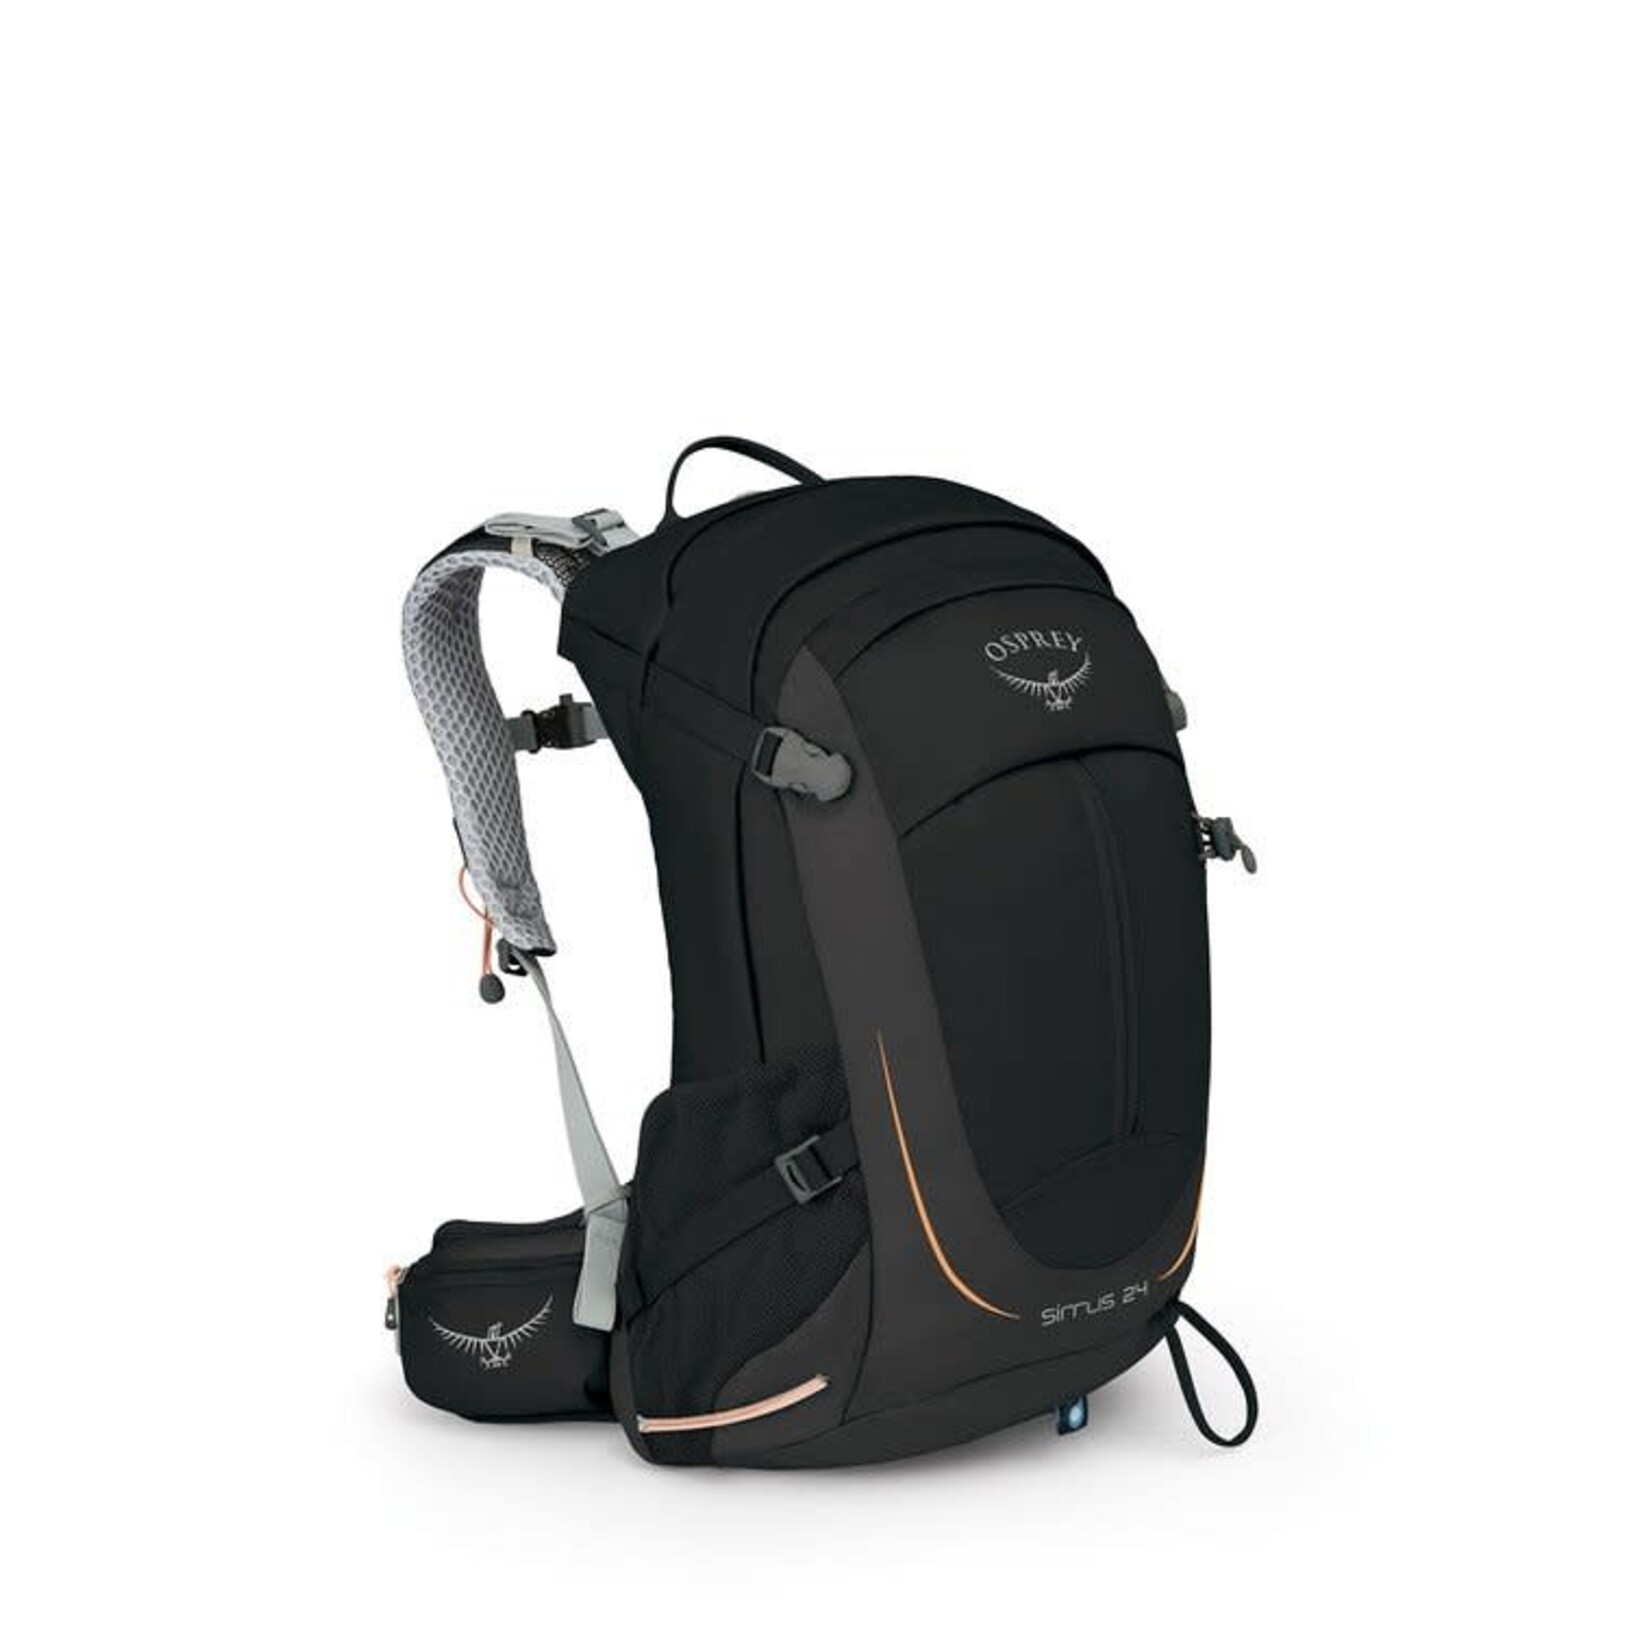 Osprey Sirrus 24 (sac à dos pour femme)